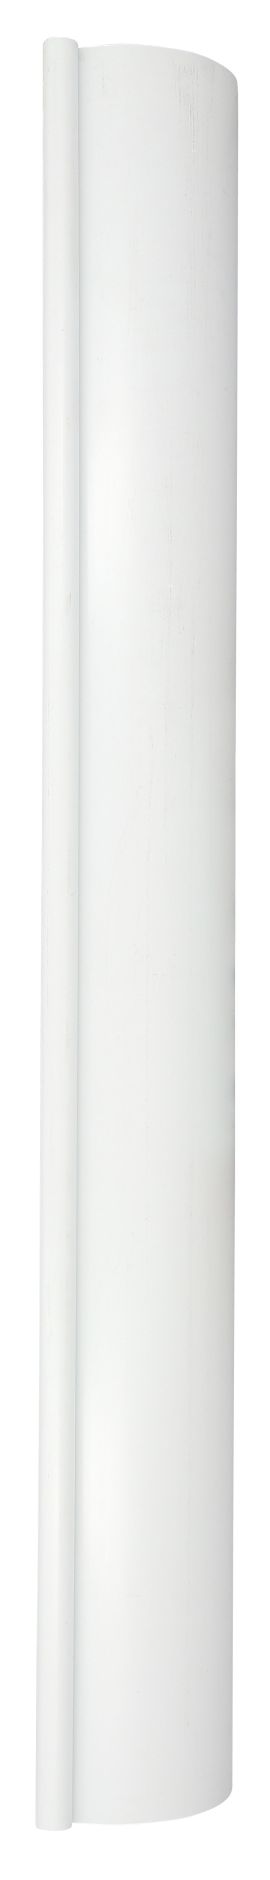 Longueur gouttiere de 25 en 3m blanc